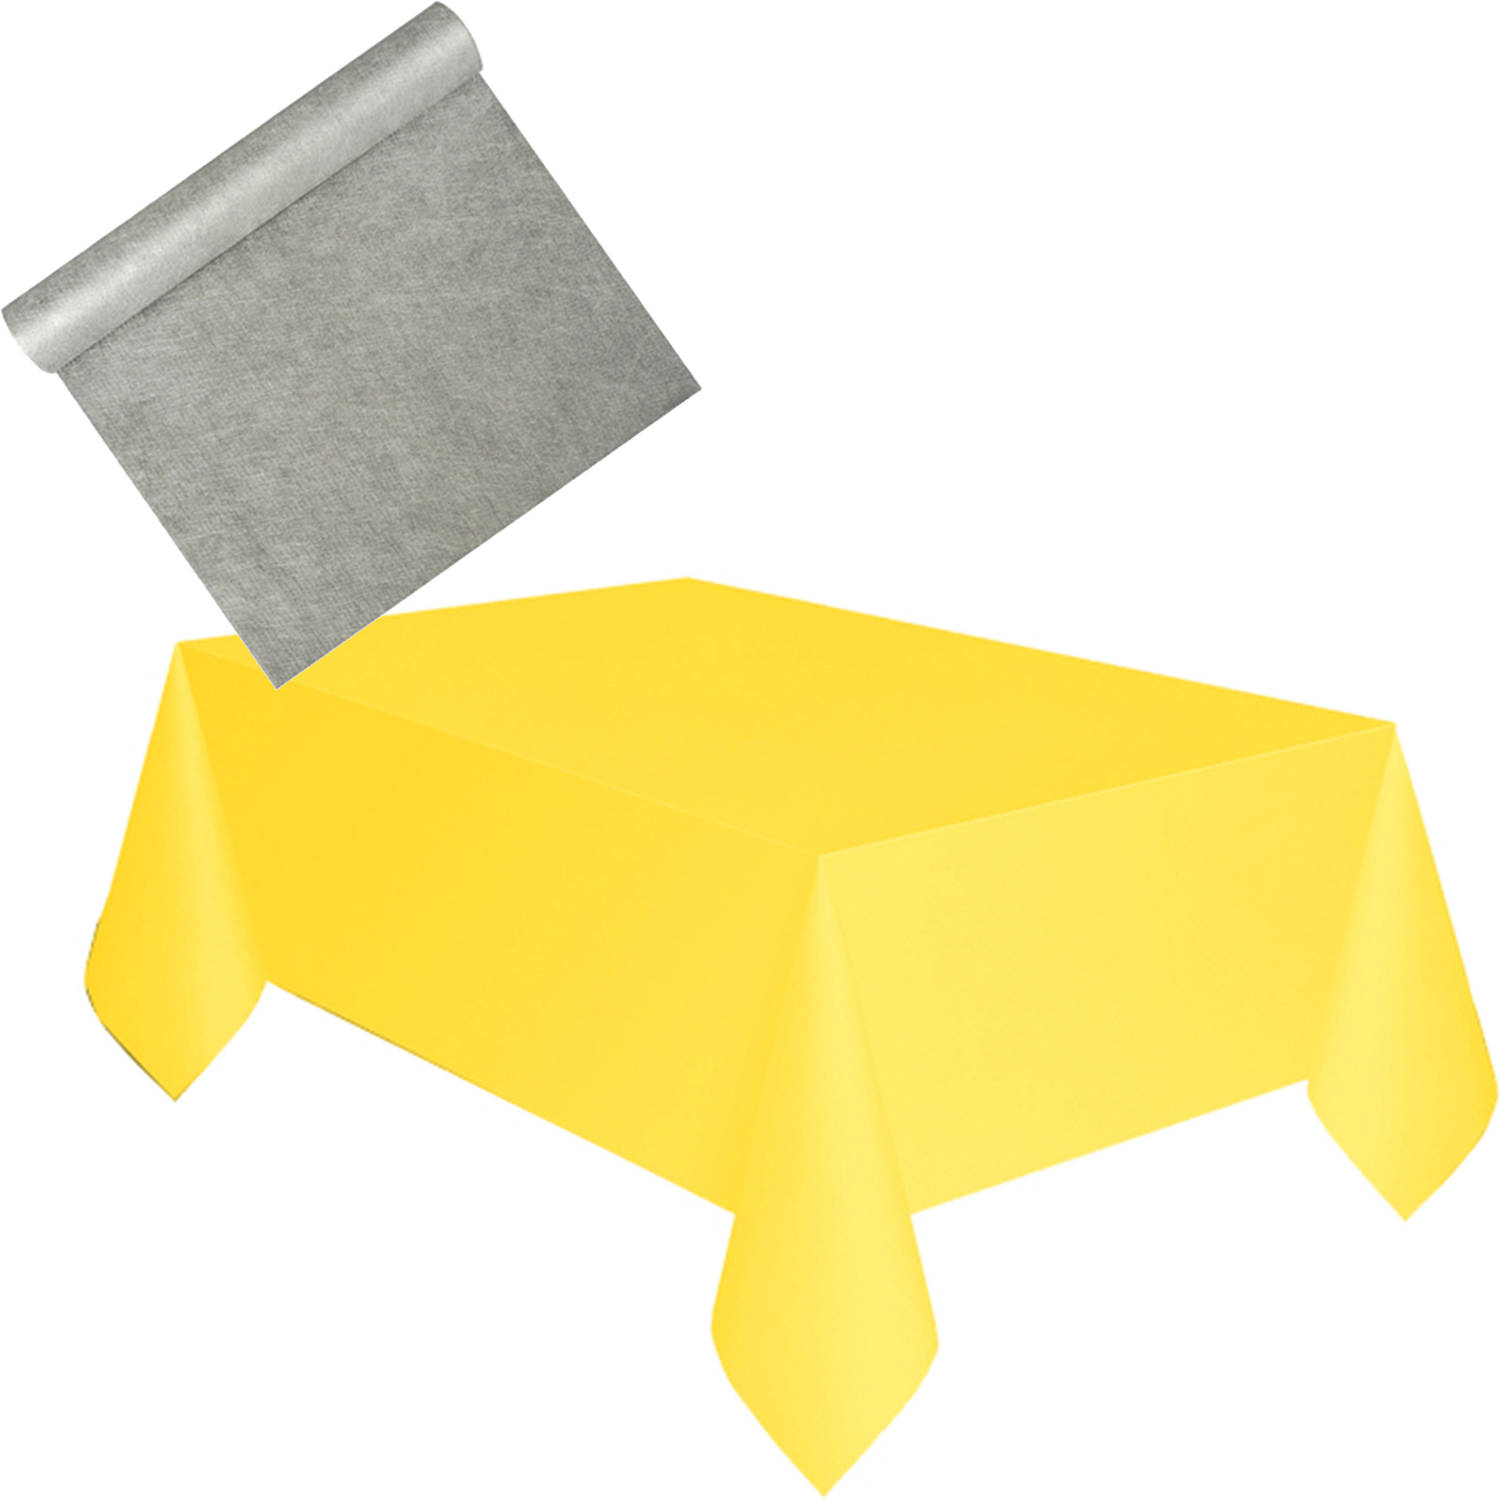 Herformuleren vernieuwen Maken Tafelkleed met loper op rol - polyester - geel - zilver - 120 x 180 cm -  Feesttafelkleden | Blokker